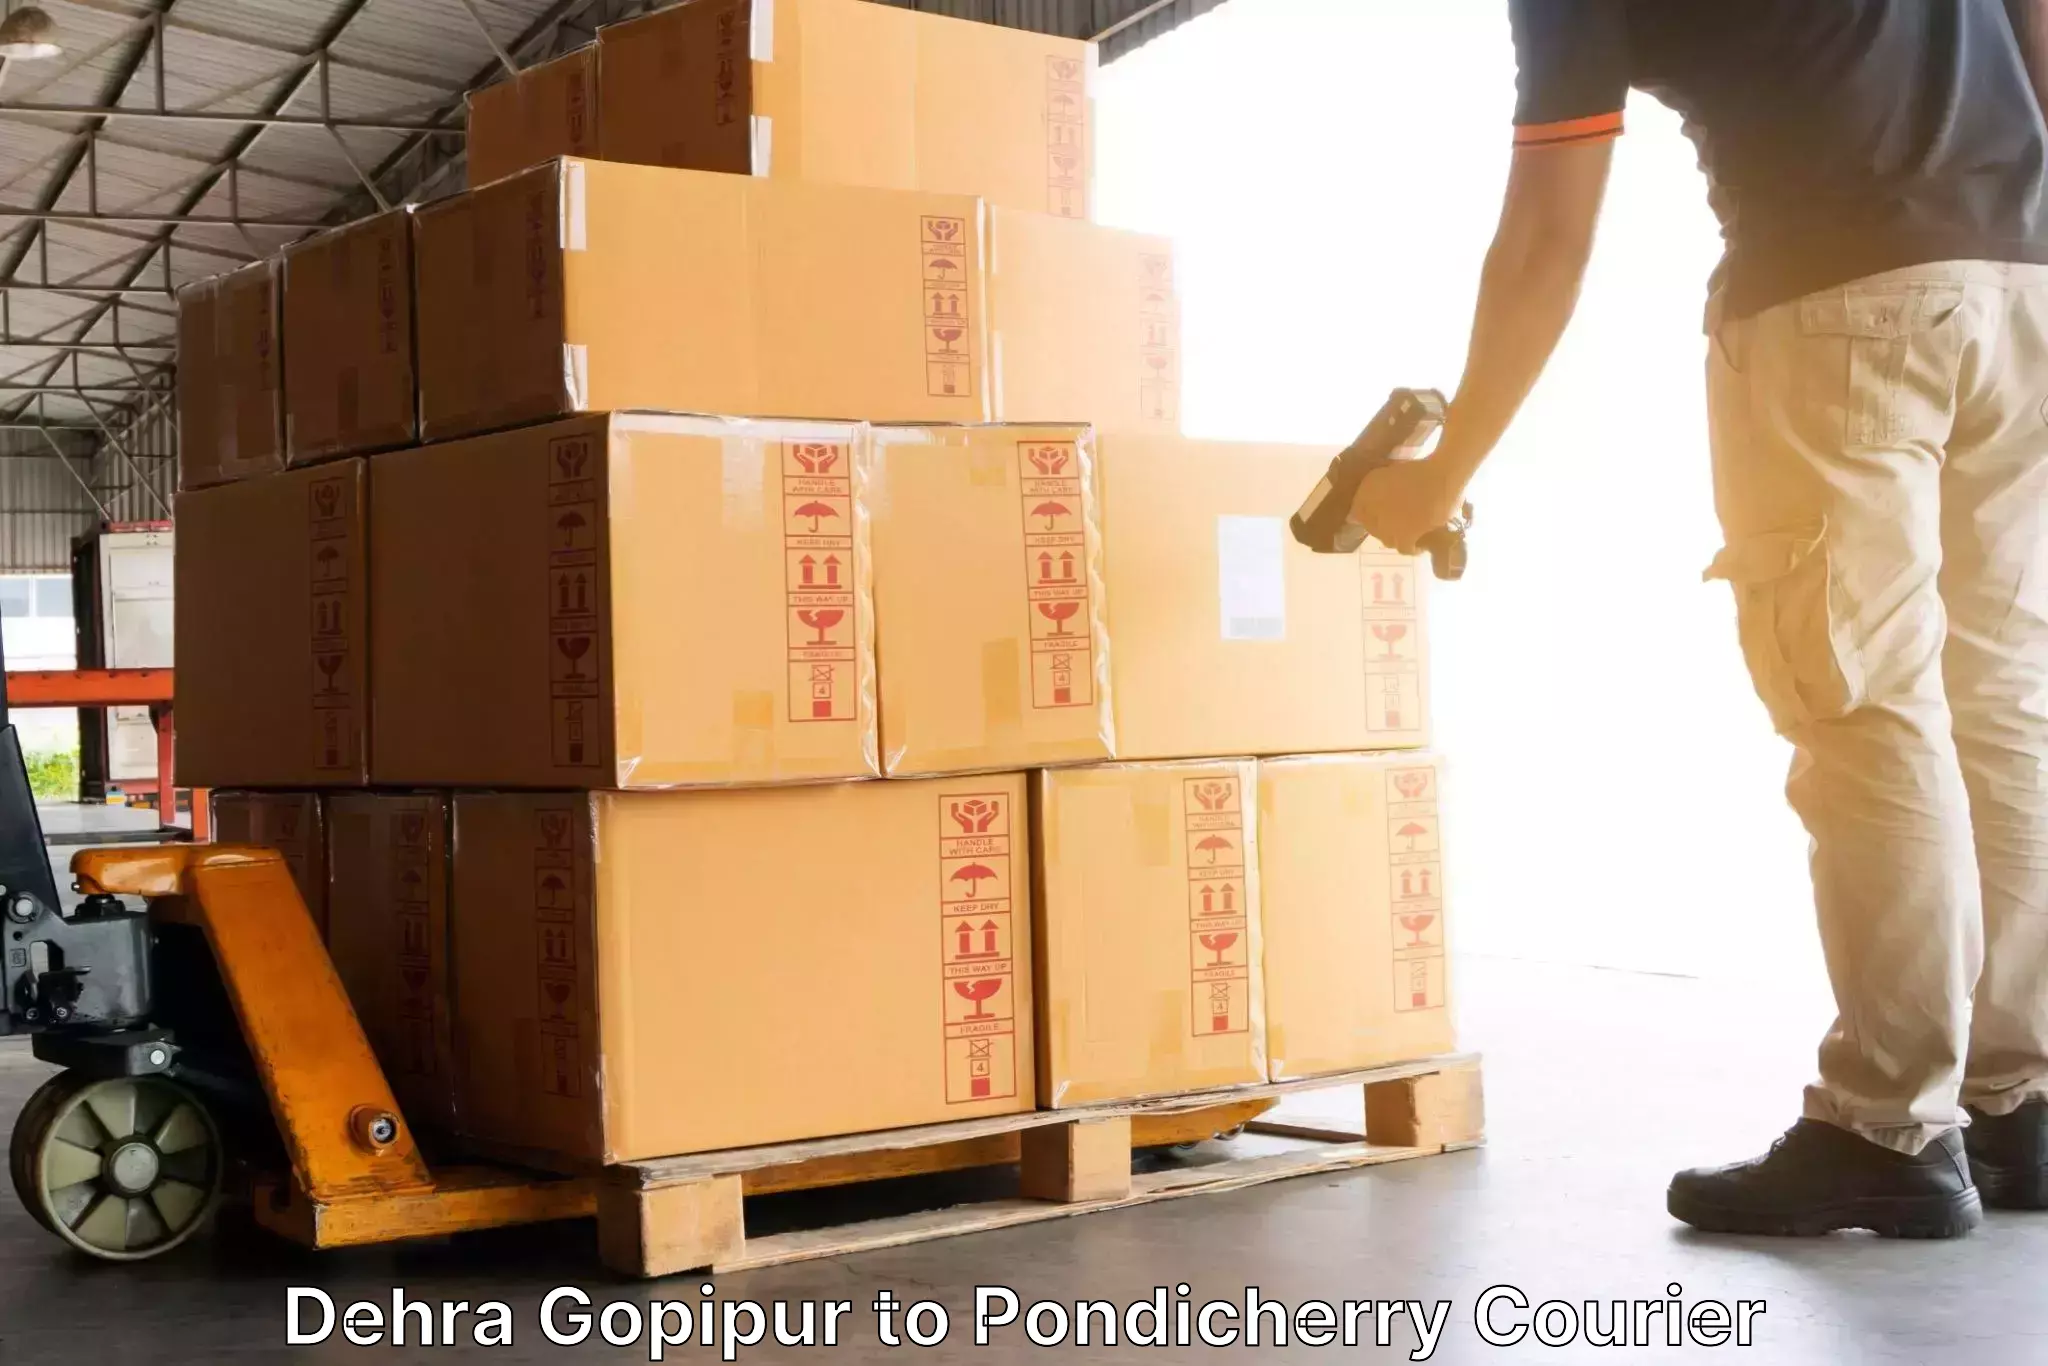 Premium courier services Dehra Gopipur to Metttupalayam